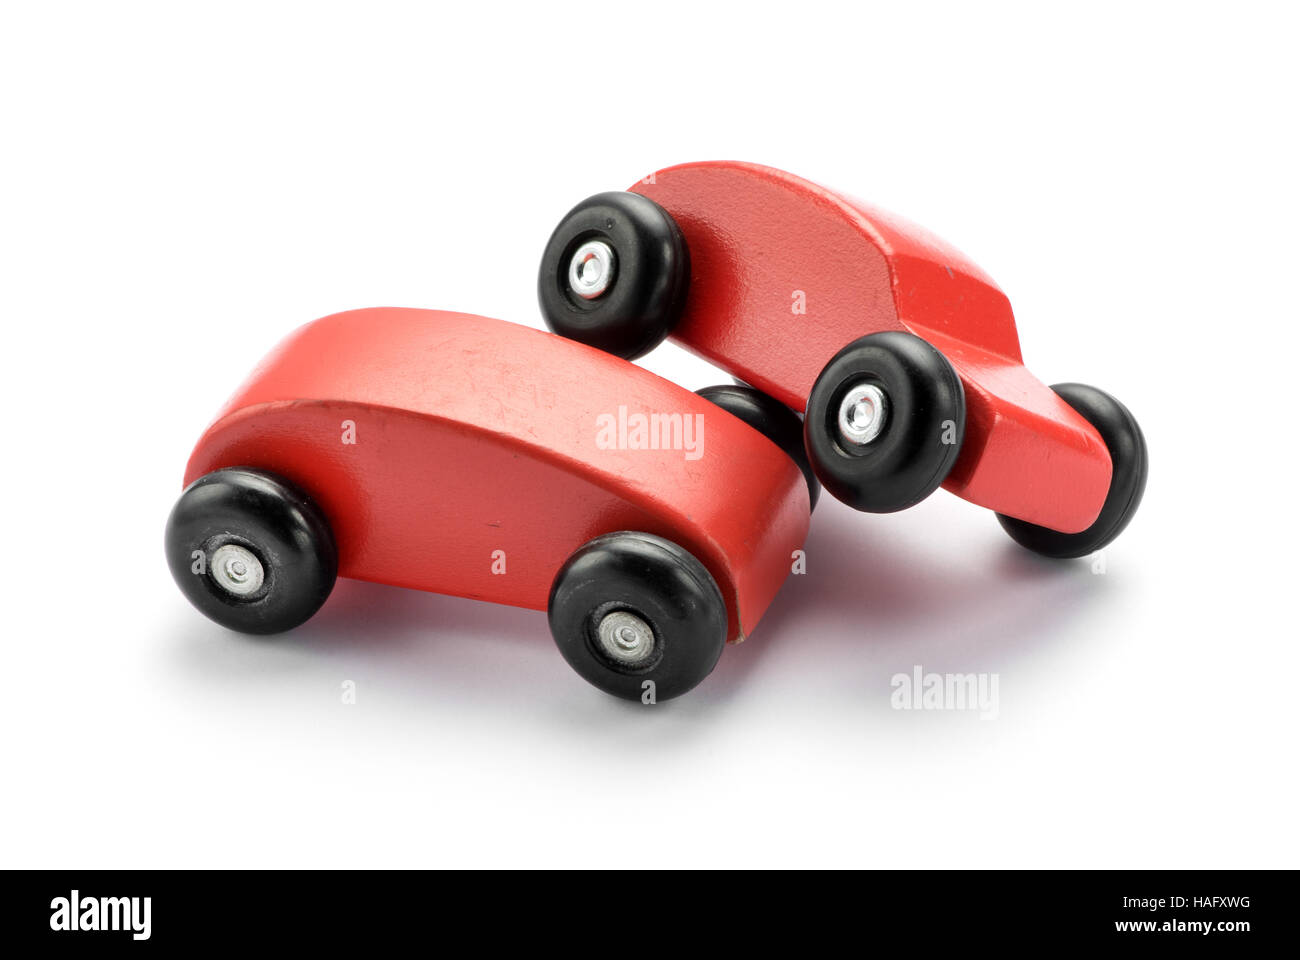 Zwei stilisierte Spielzeug aus Holz rote Autos Stapeln auf einem anderen begrifflichen eines Kraftfahrzeug-Verkehrsunfall oder einer Kollision auf weiß mit Textfreiraum Stockfoto